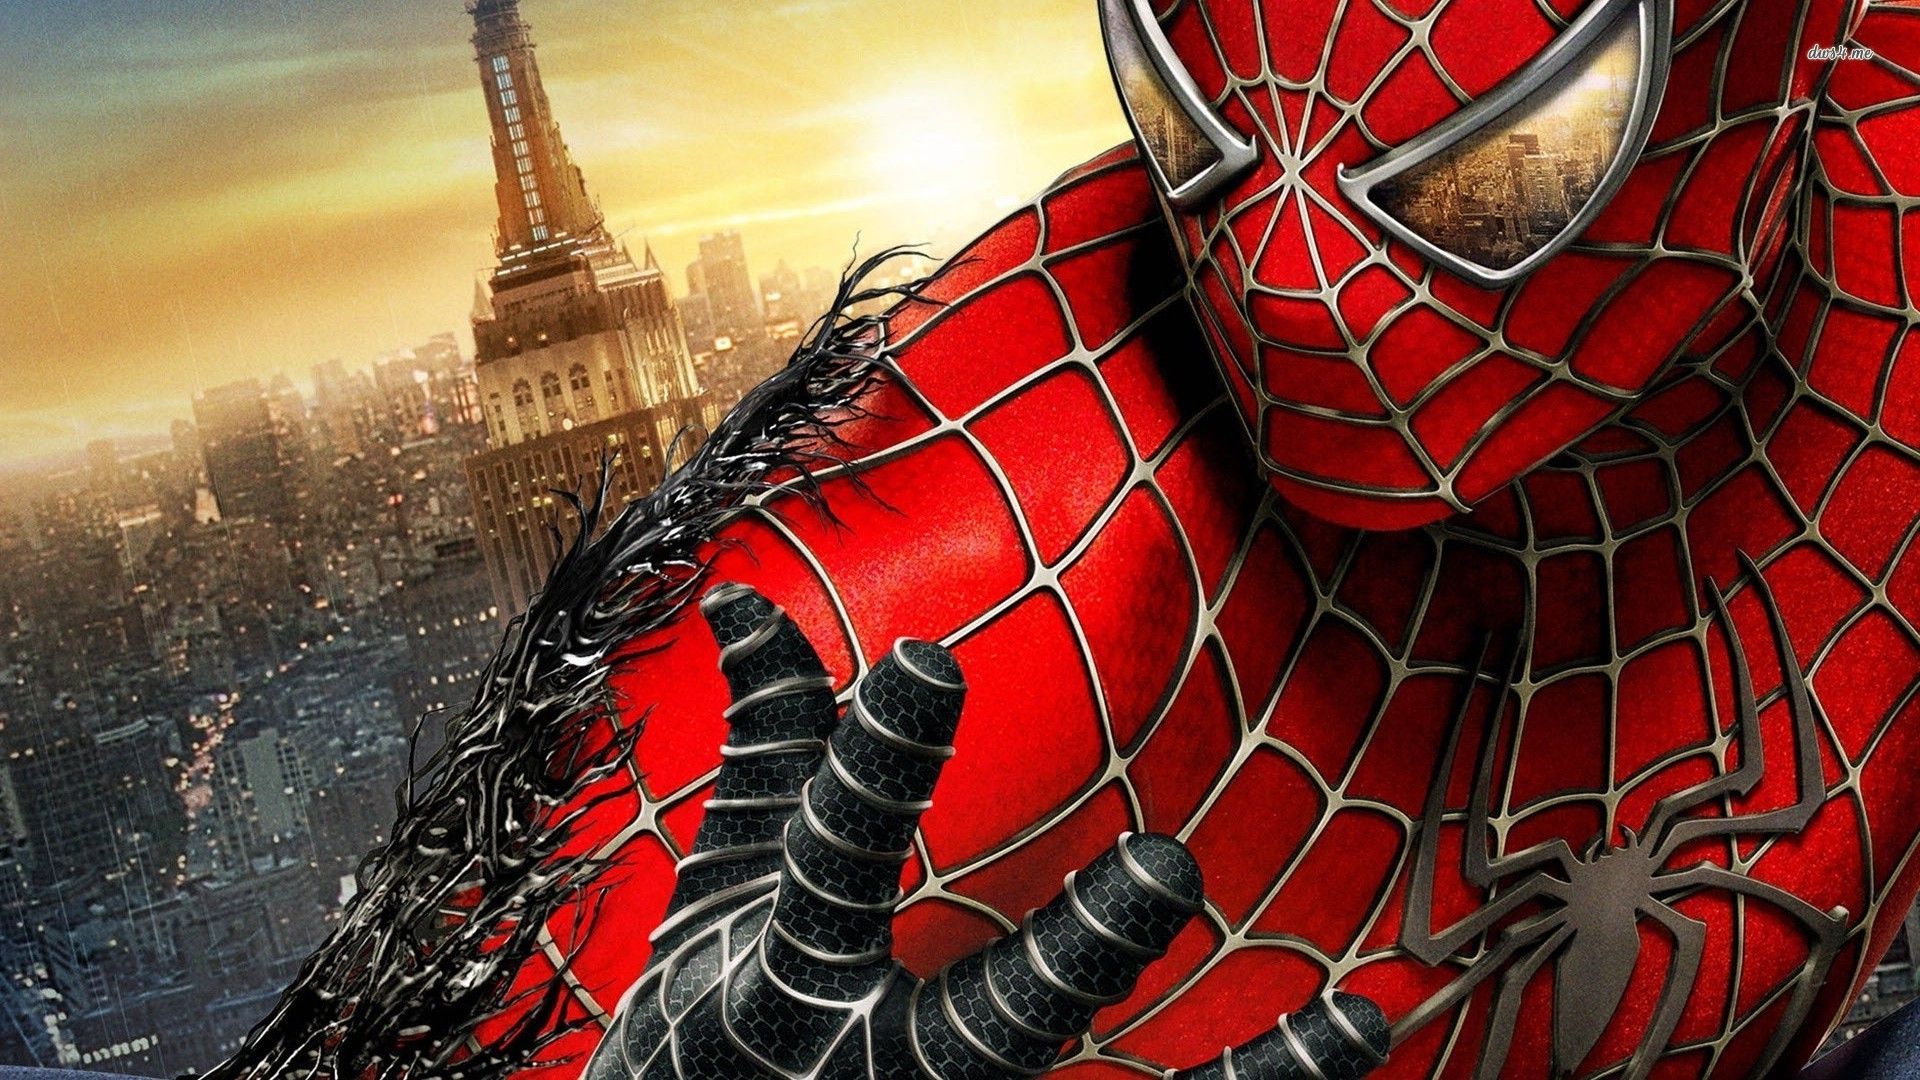 Download Download Spiderman Wallpaper Full HD #B7QLm ...